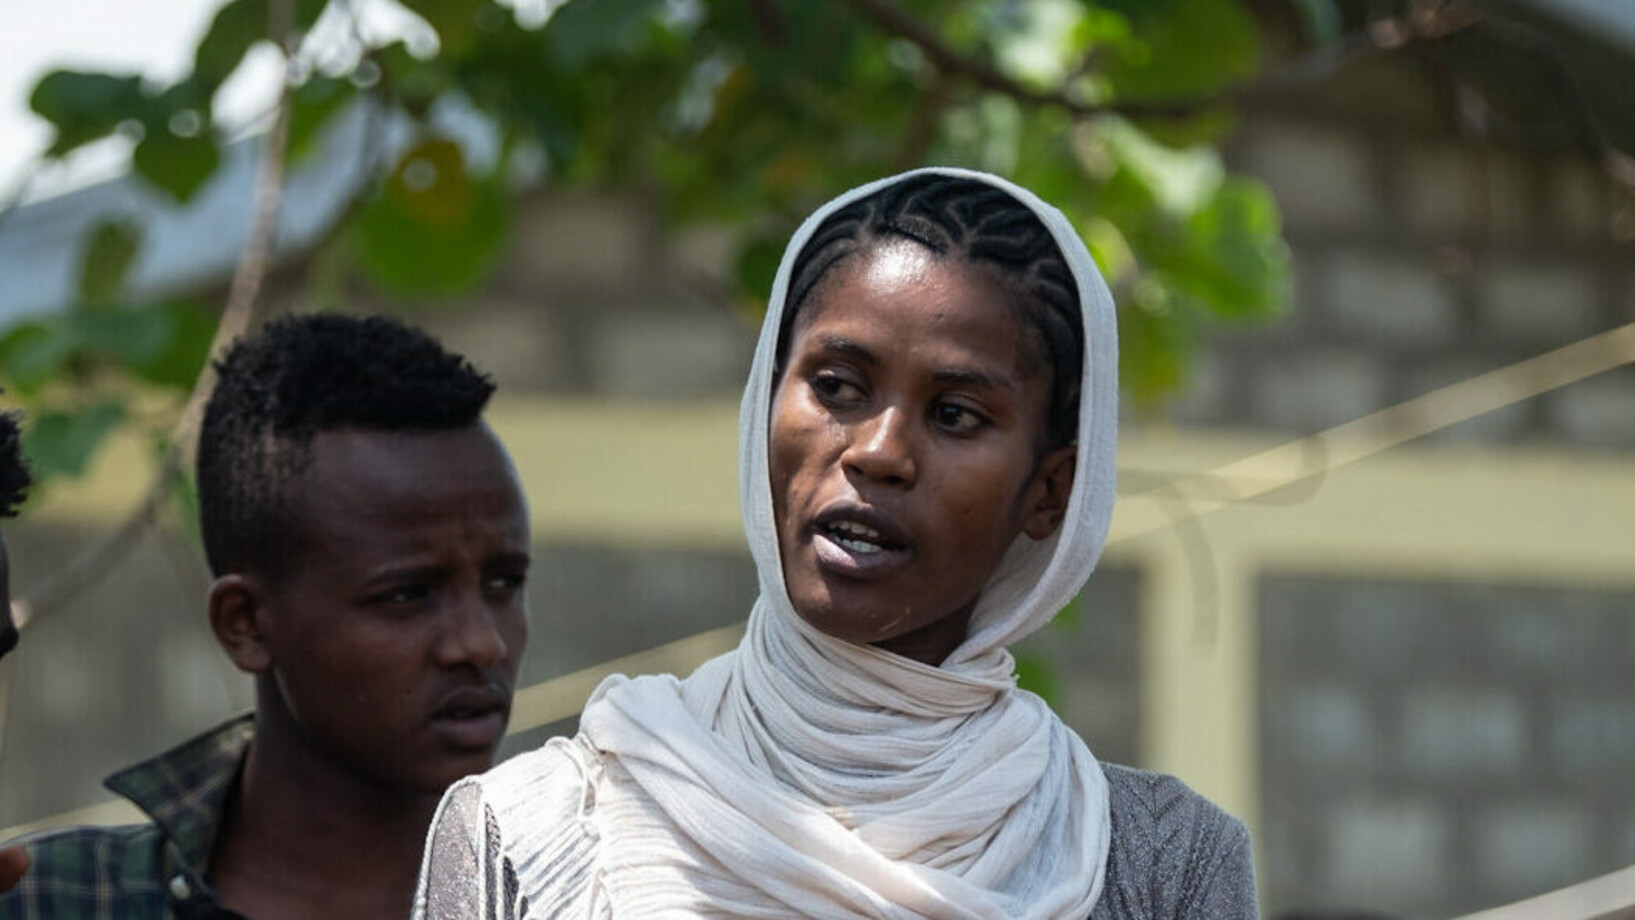 Marta Berhane aus Abaya Äthiopien Stiftung Menschen für Menschen